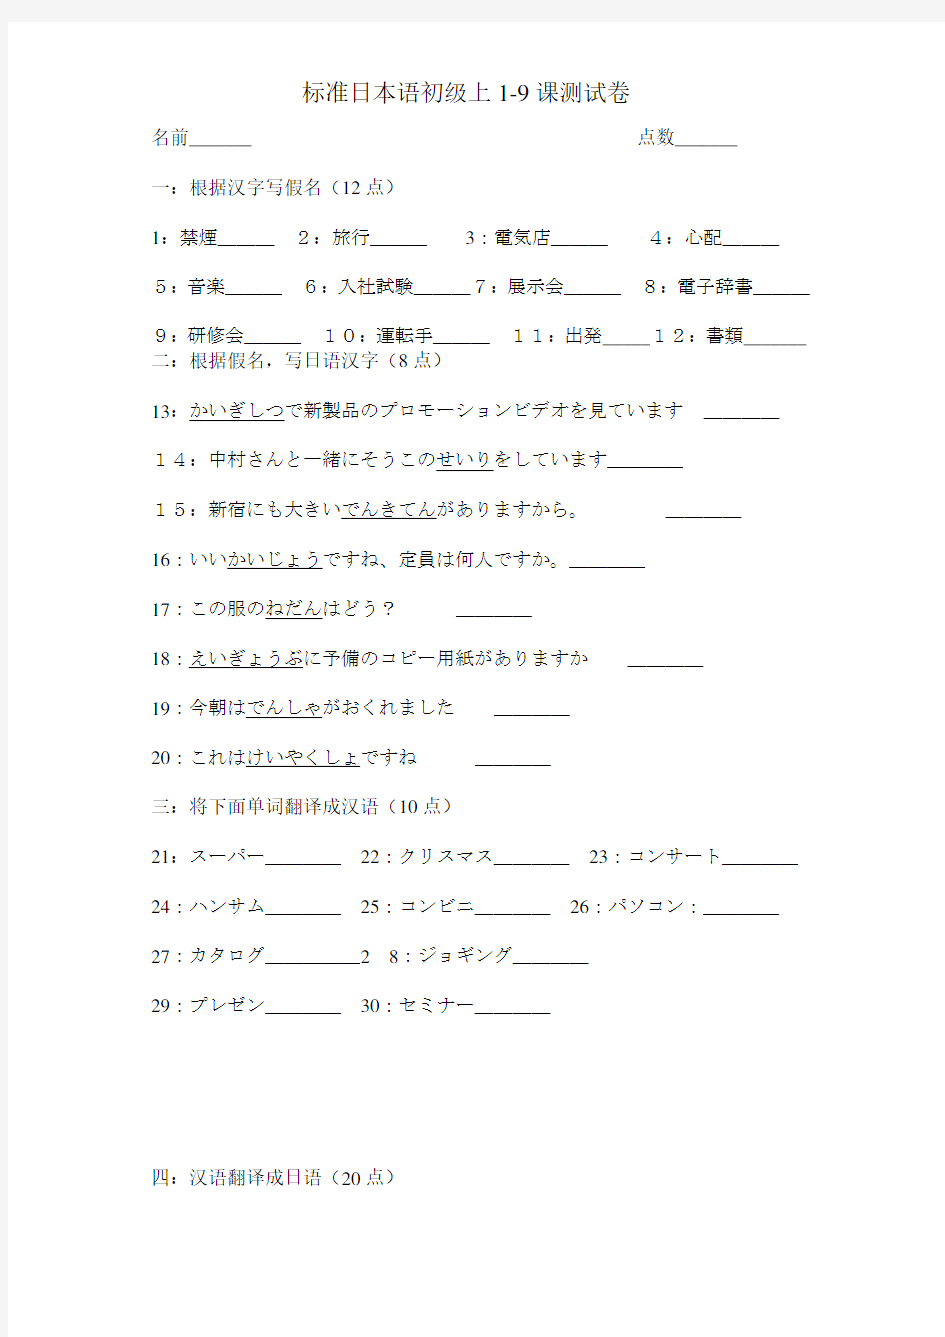 标准日本语初级1-10课考试